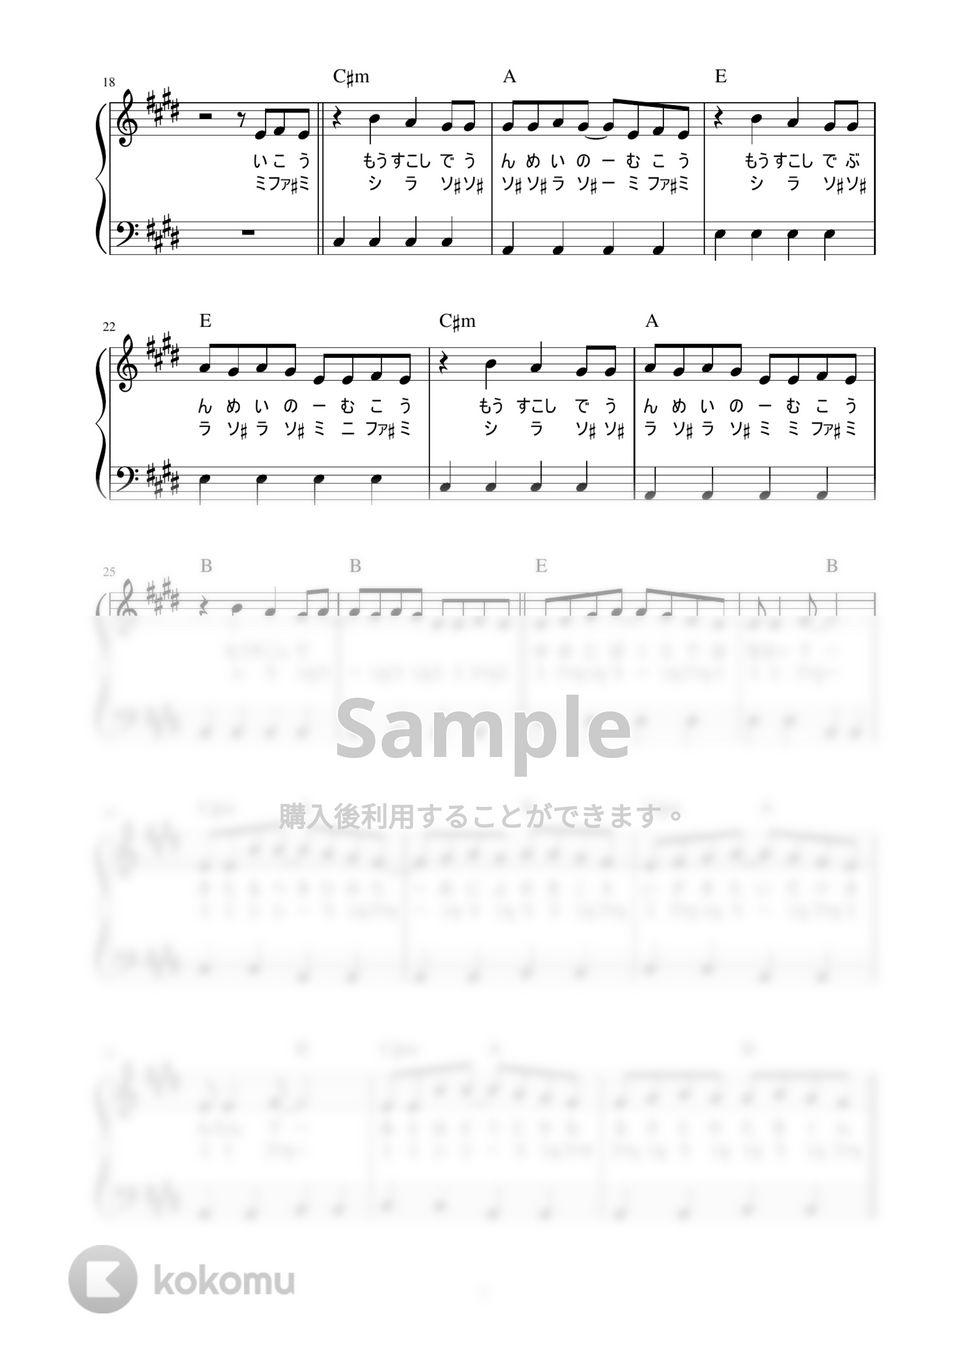 RADWIMPS - グランドエスケープ (shout version / かんたん / 歌詞付き / ドレミ付き / 初心者) by piano.tokyo